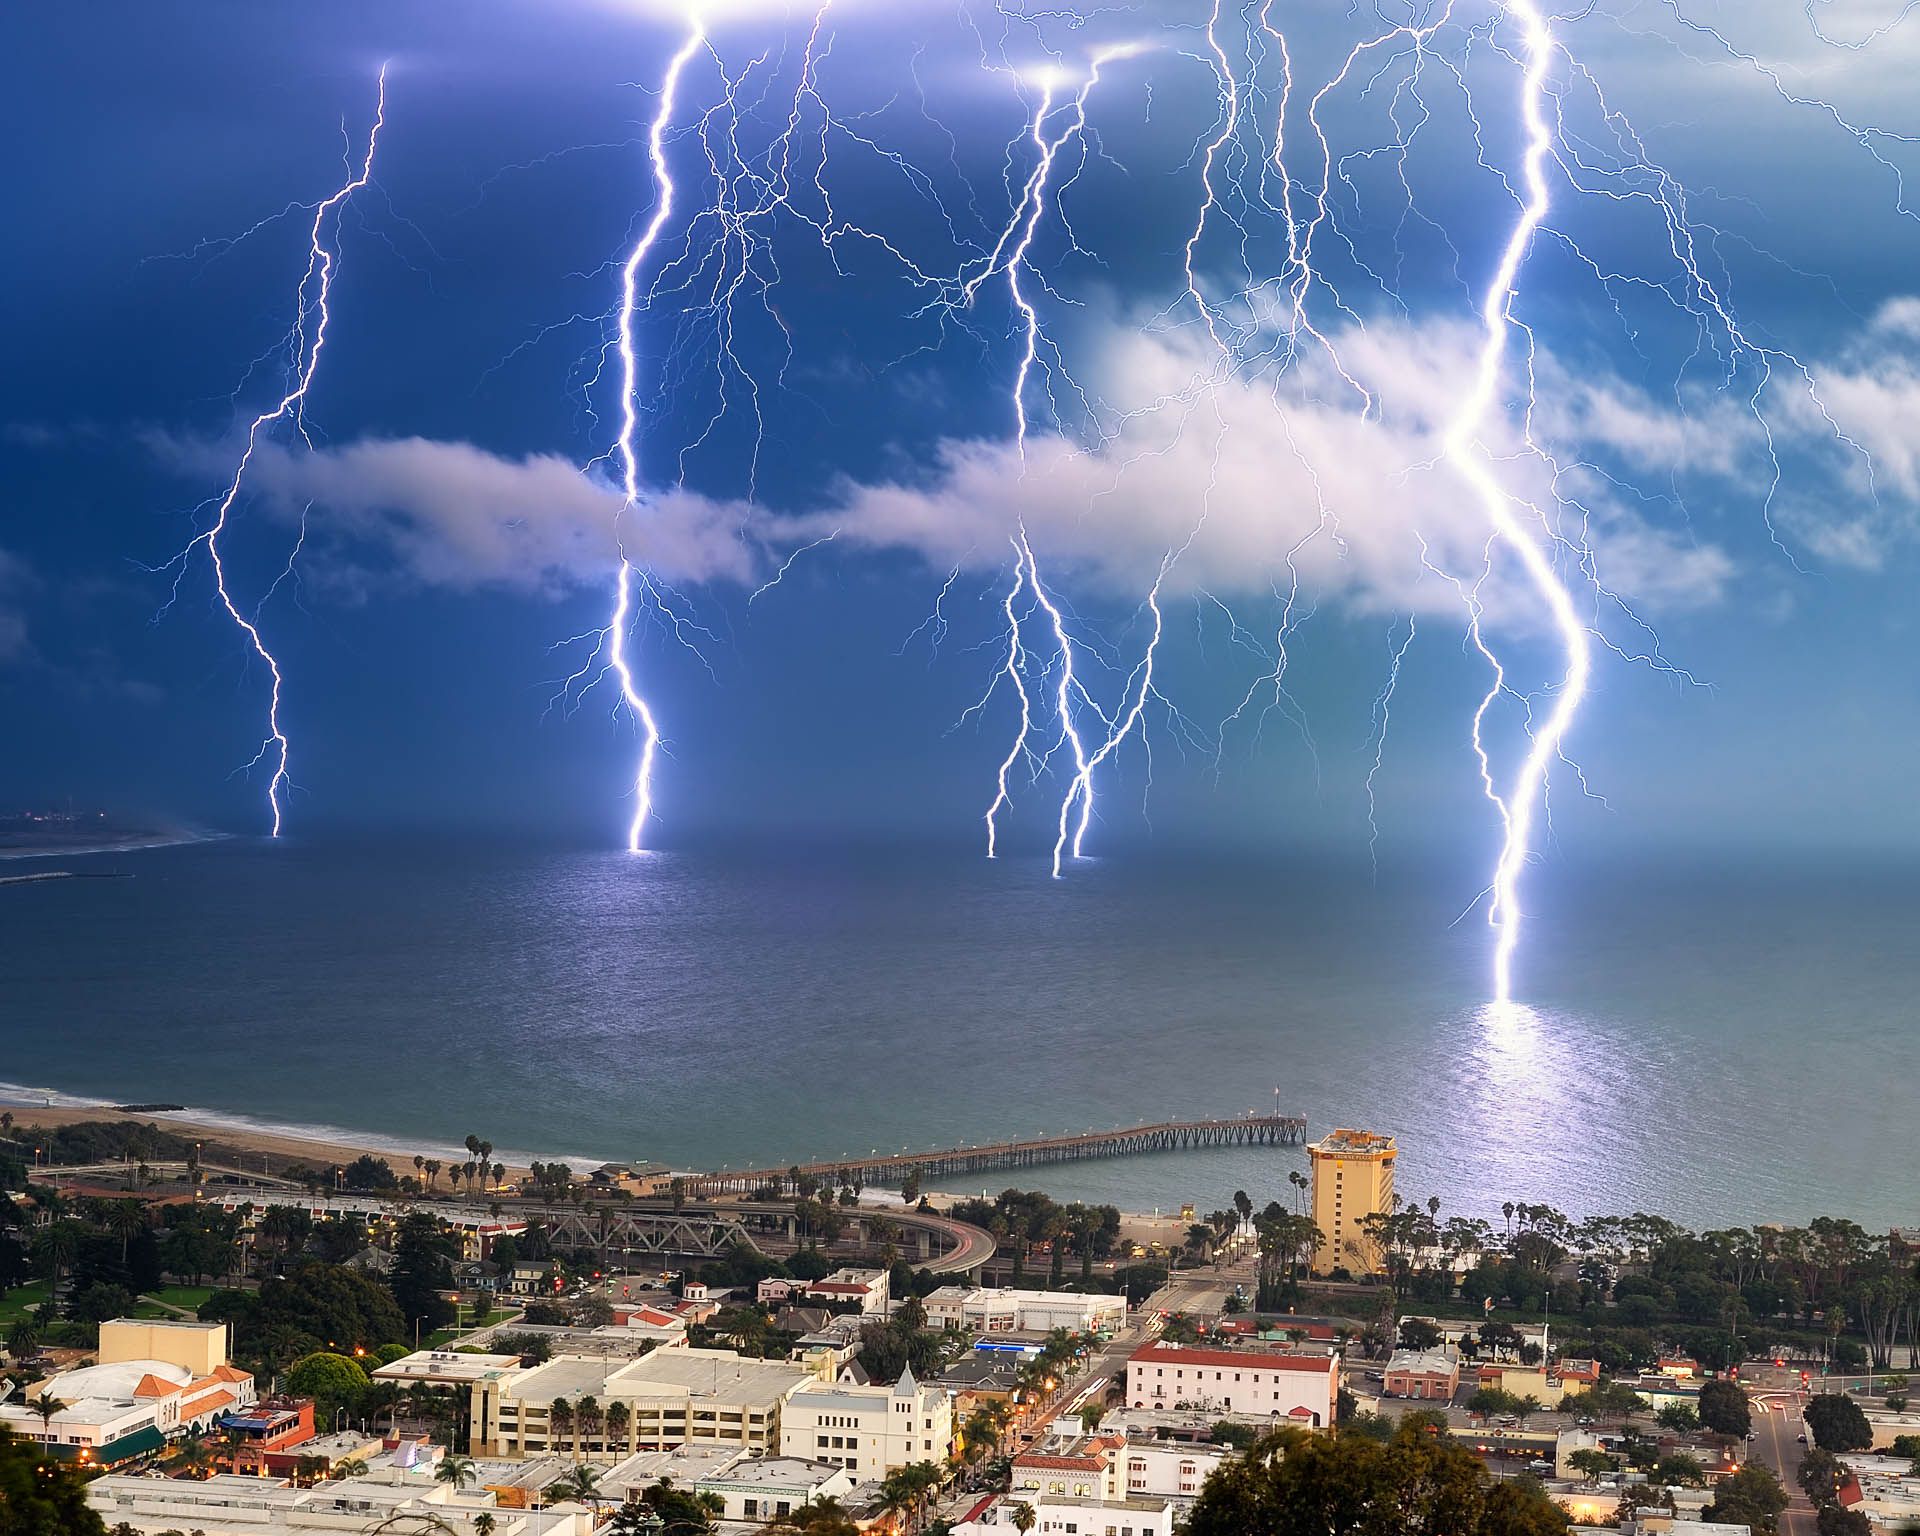 lightning bolts striking the Pacific Ocean off shore in Ventura